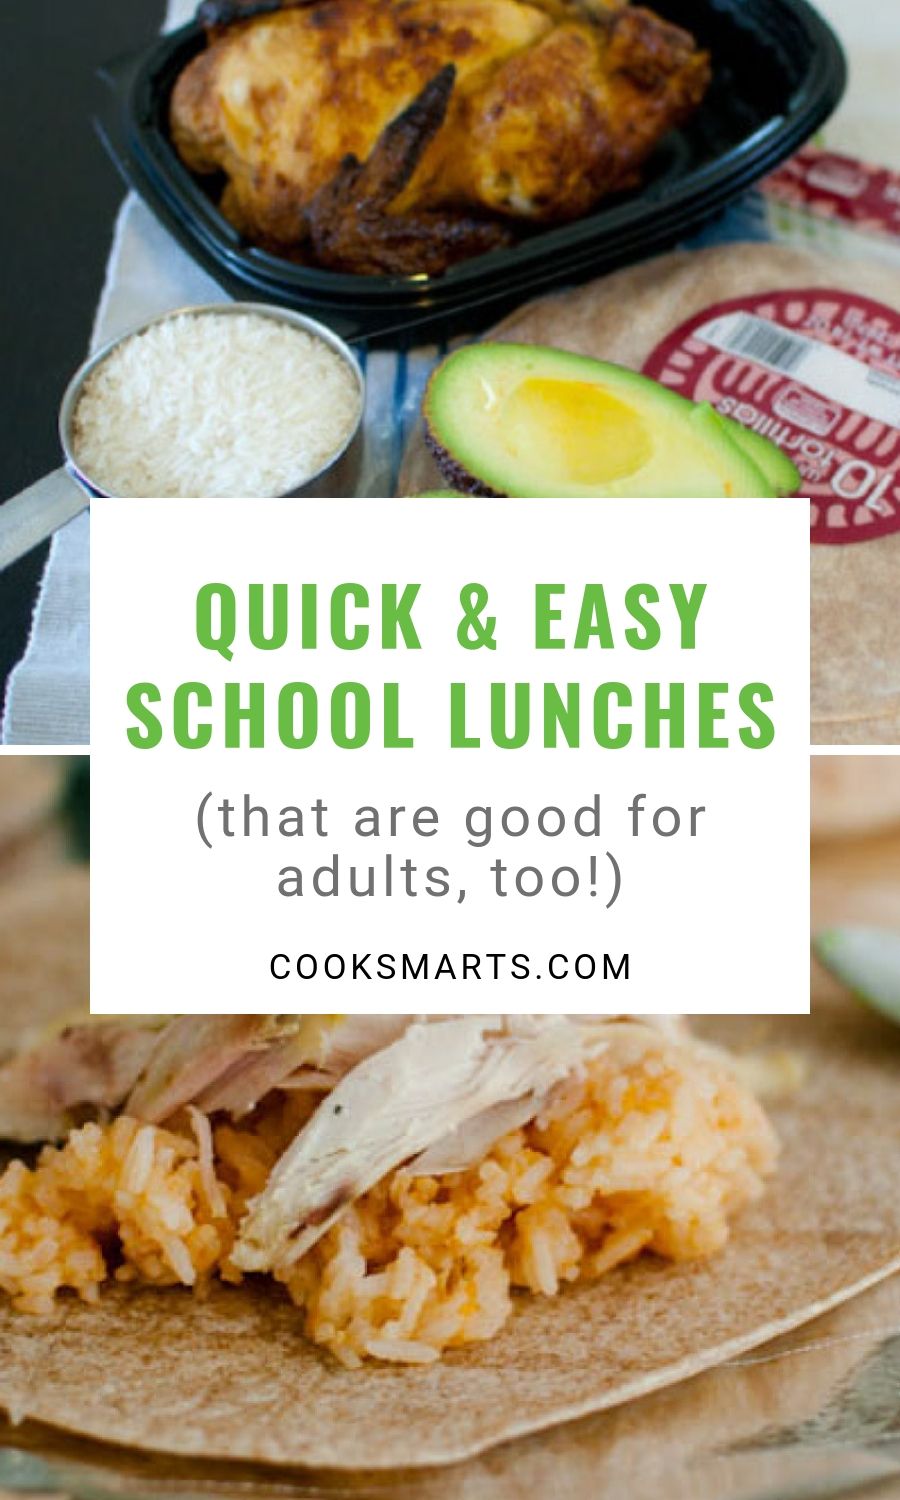 Chicken & Rice Burrito + More School Lunch Ideas | Cook Smarts